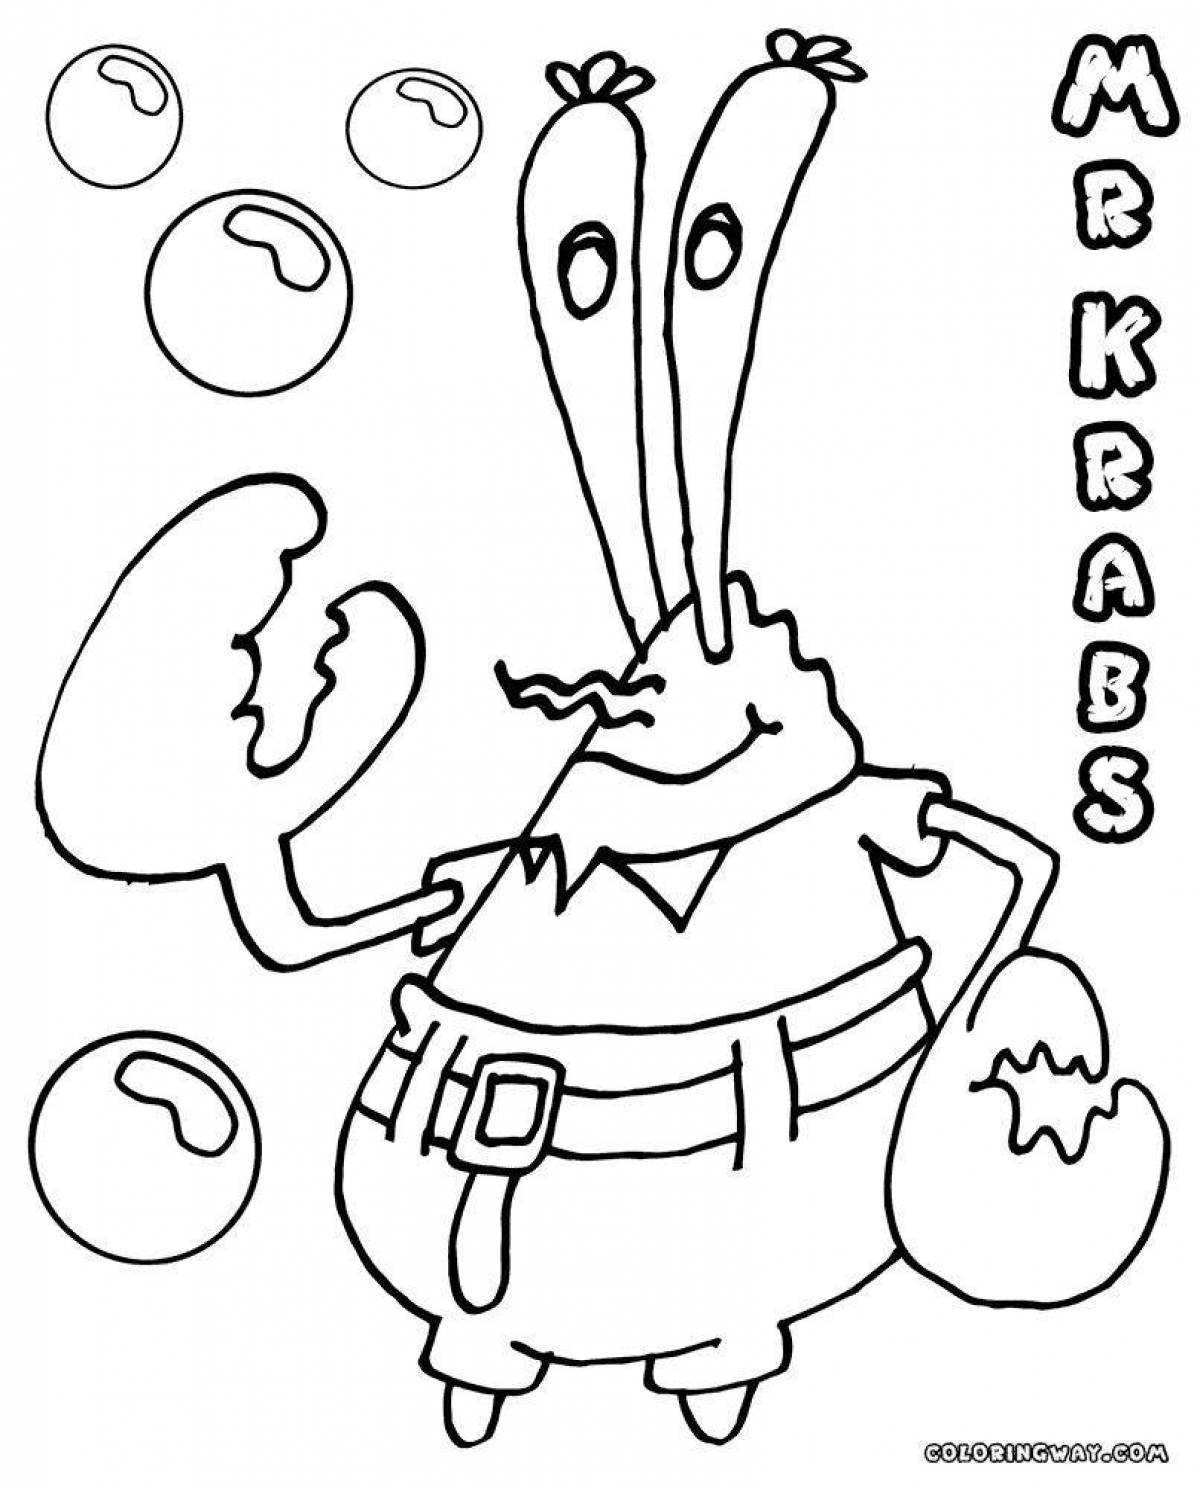 Humorous mr krabs coloring book